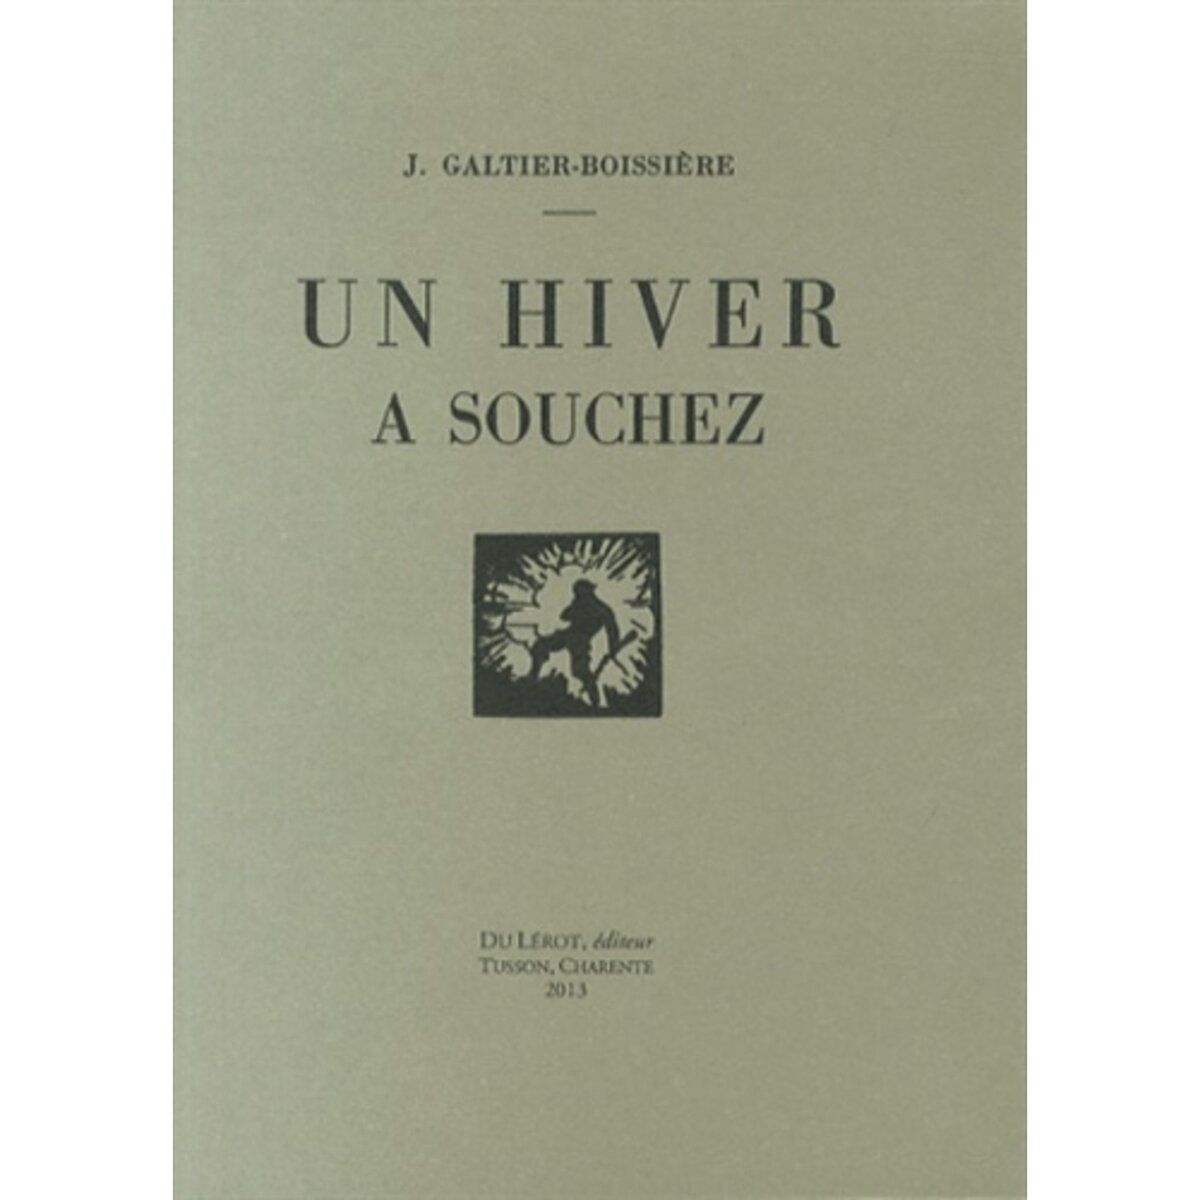  UN HIVER A SOUCHEZ, Galtier-Boissière Jean